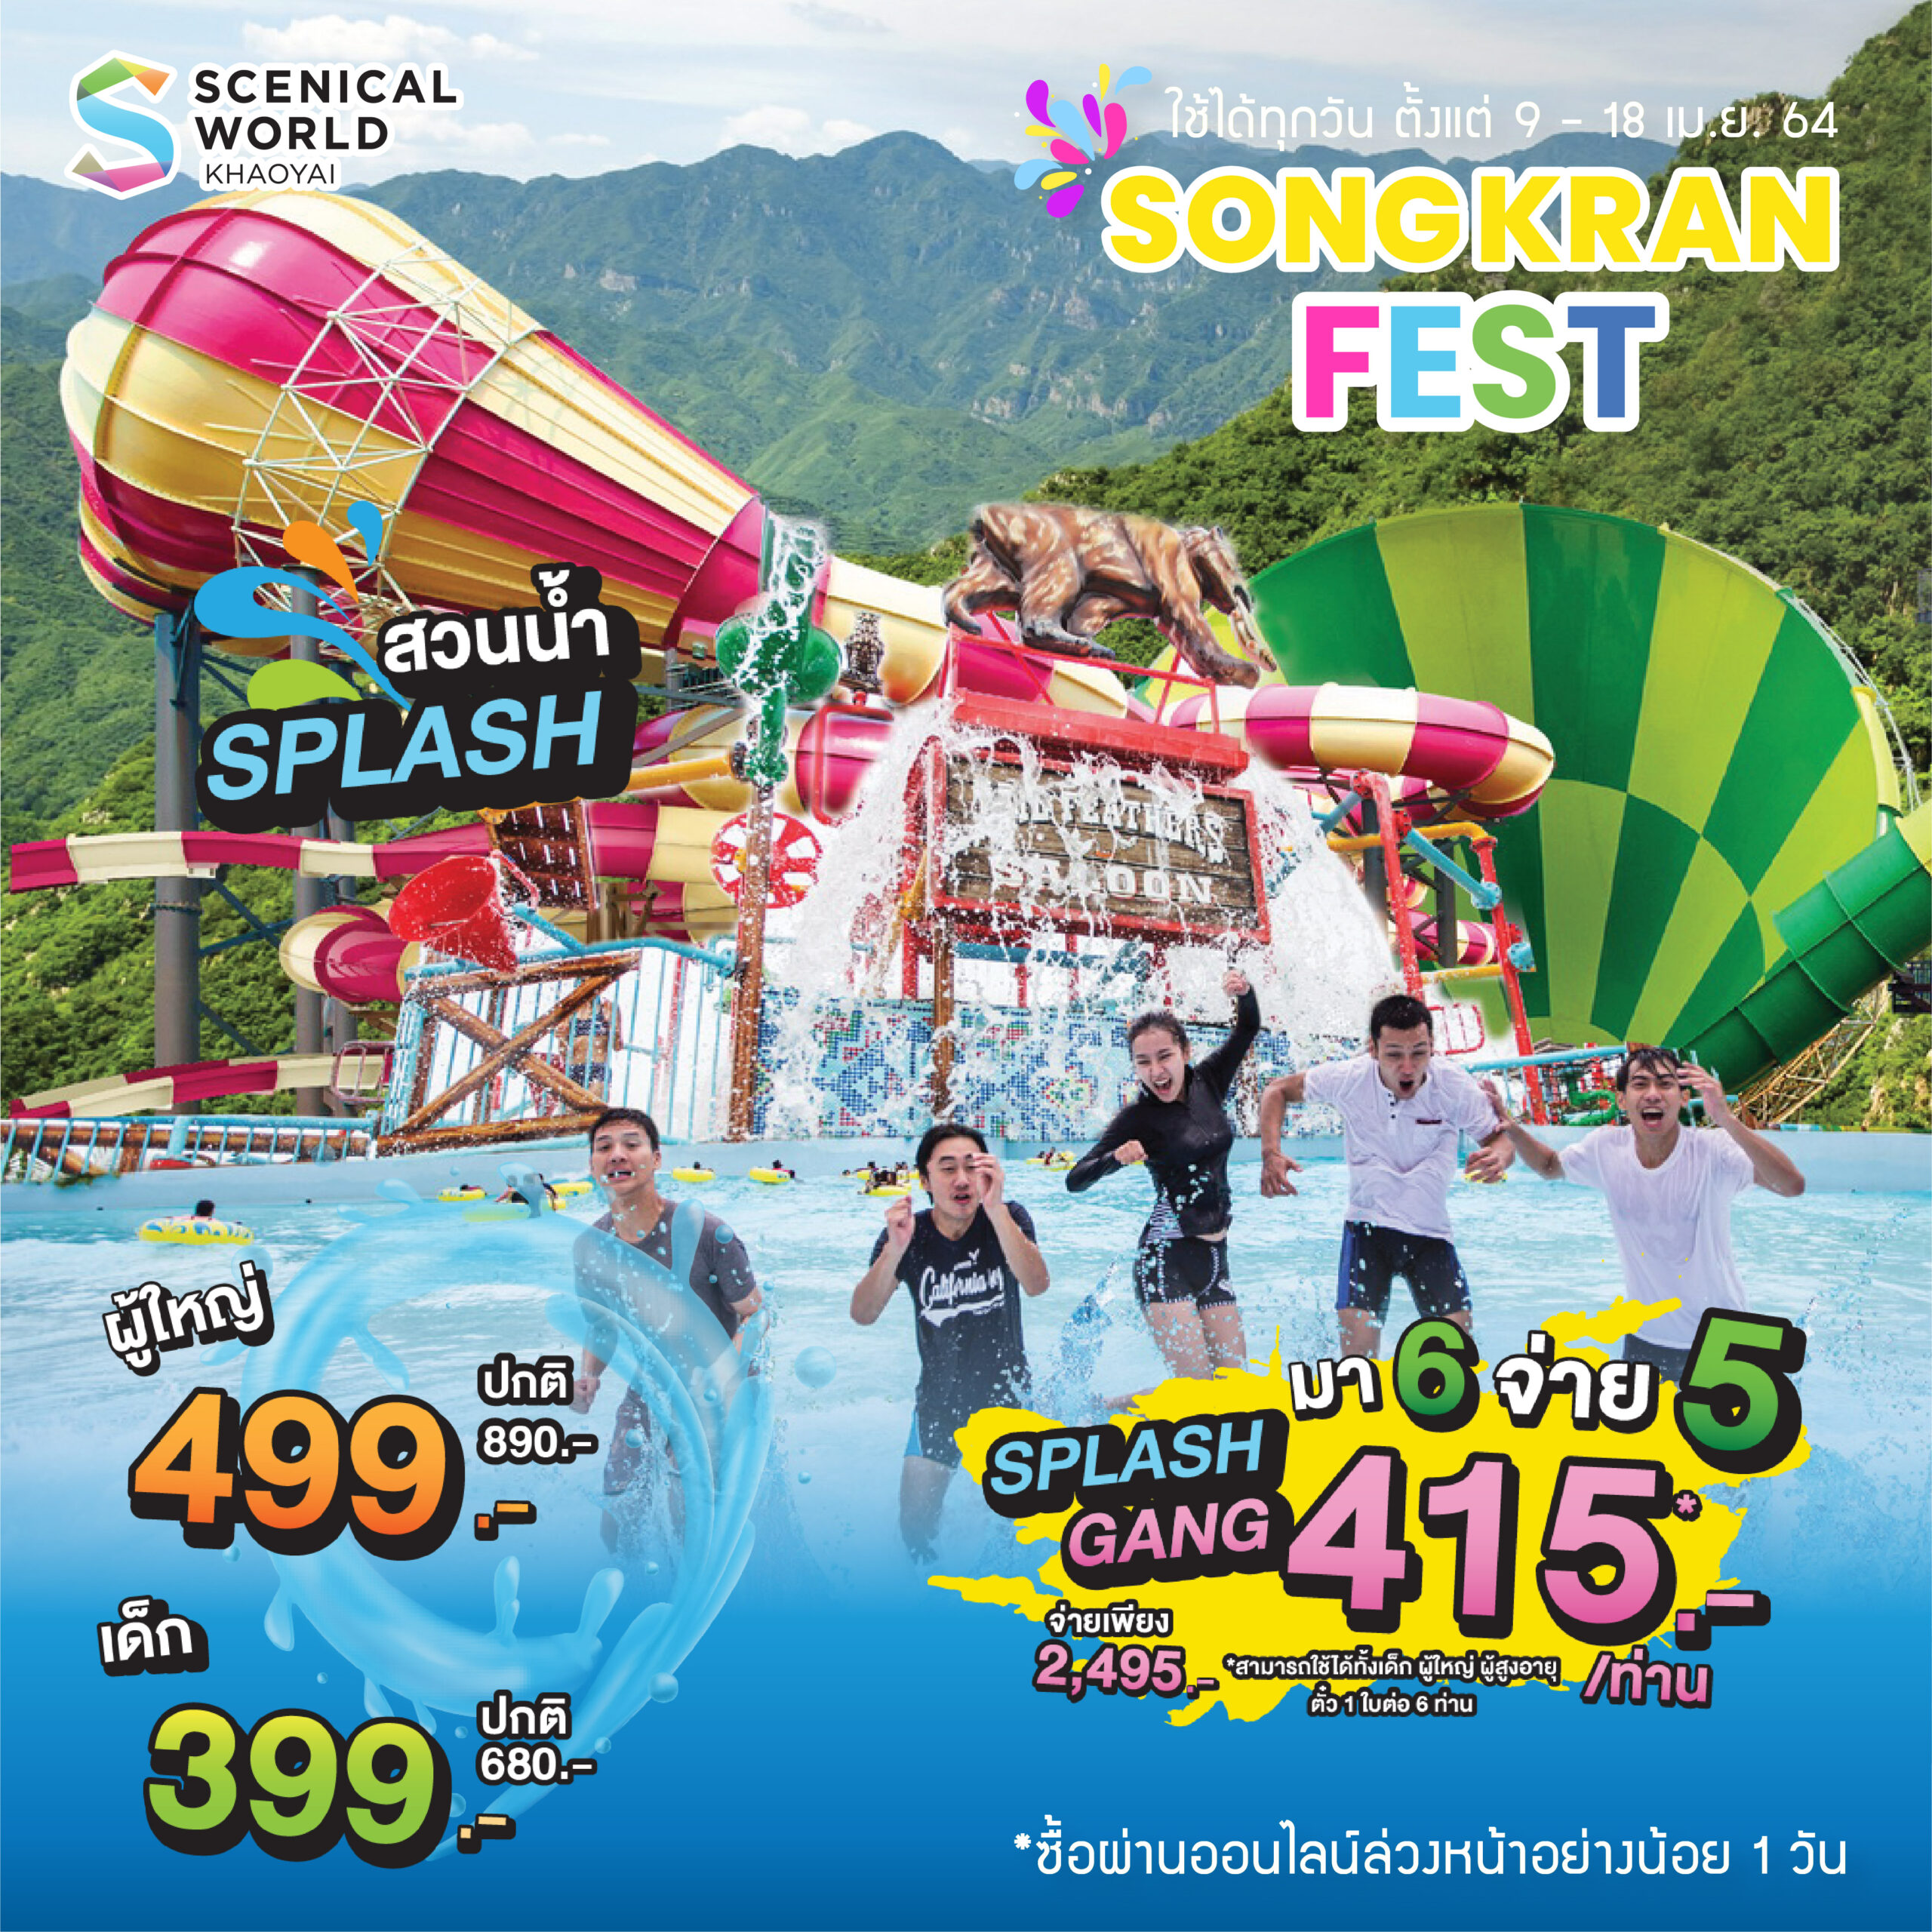 Splash | Songkran Fest